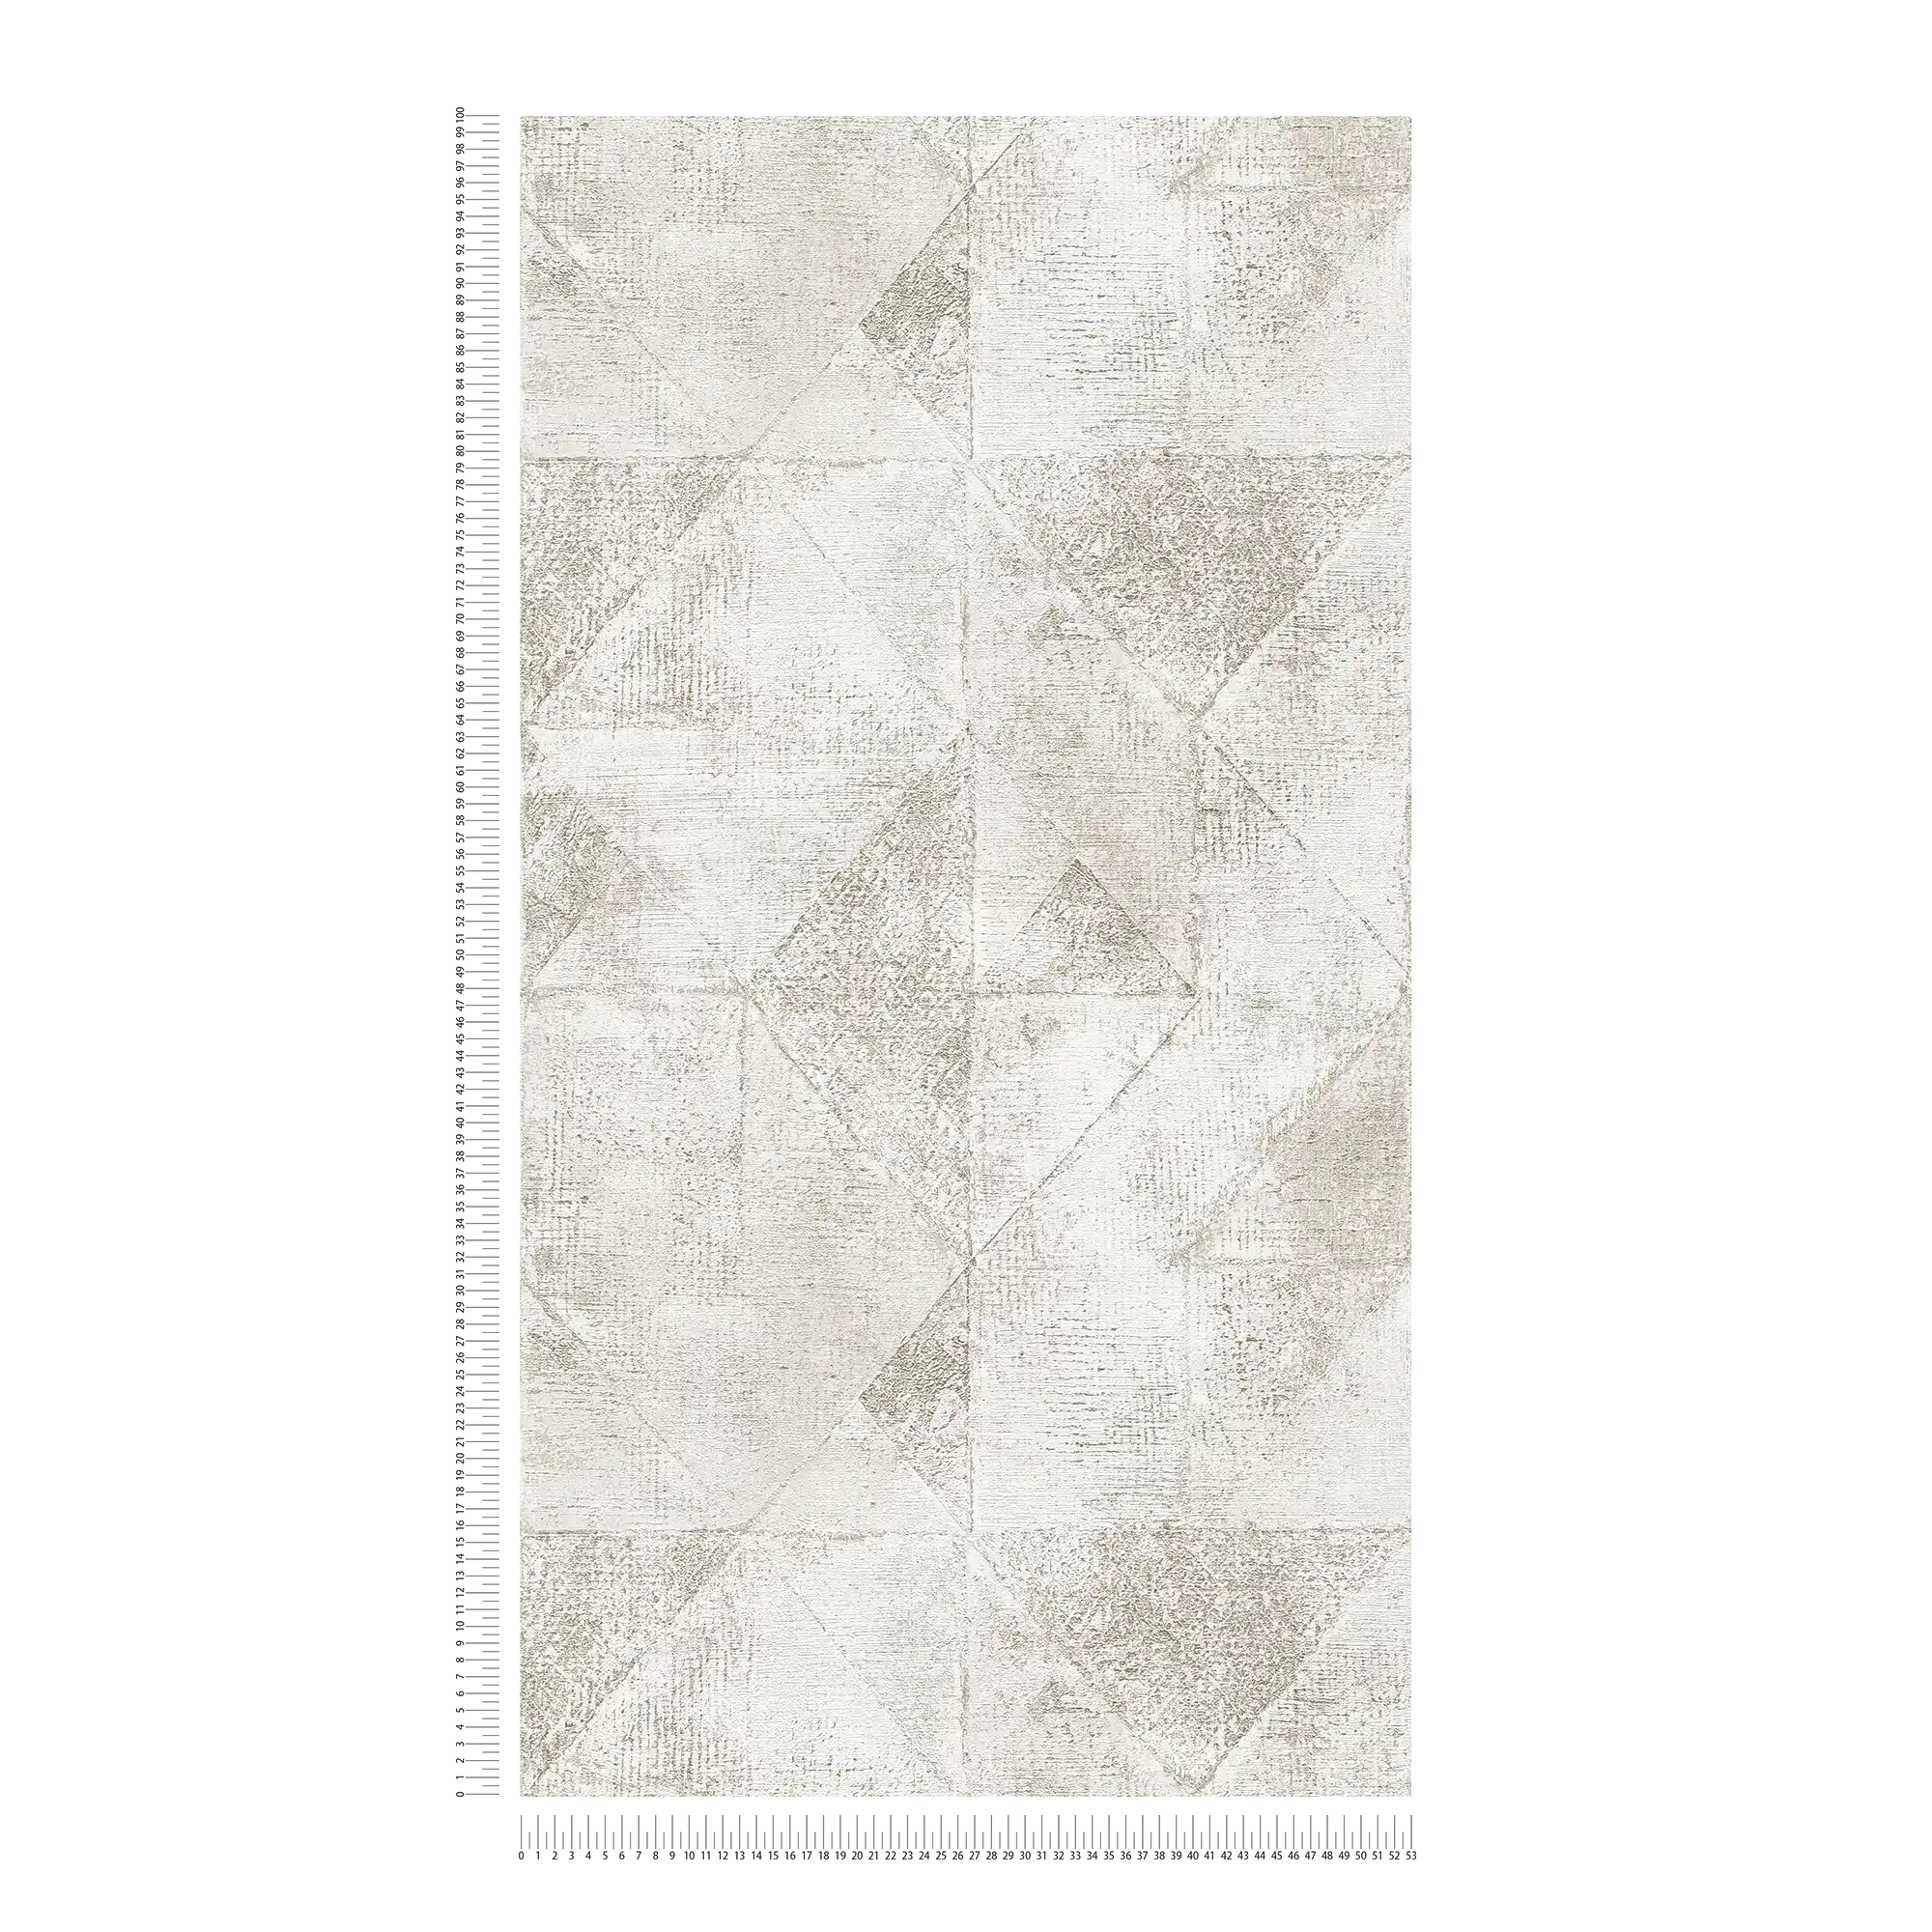             Tapete mit Grafik metallic Dreieck-Muster glänzend strukturiert – Silber, Weiß
        